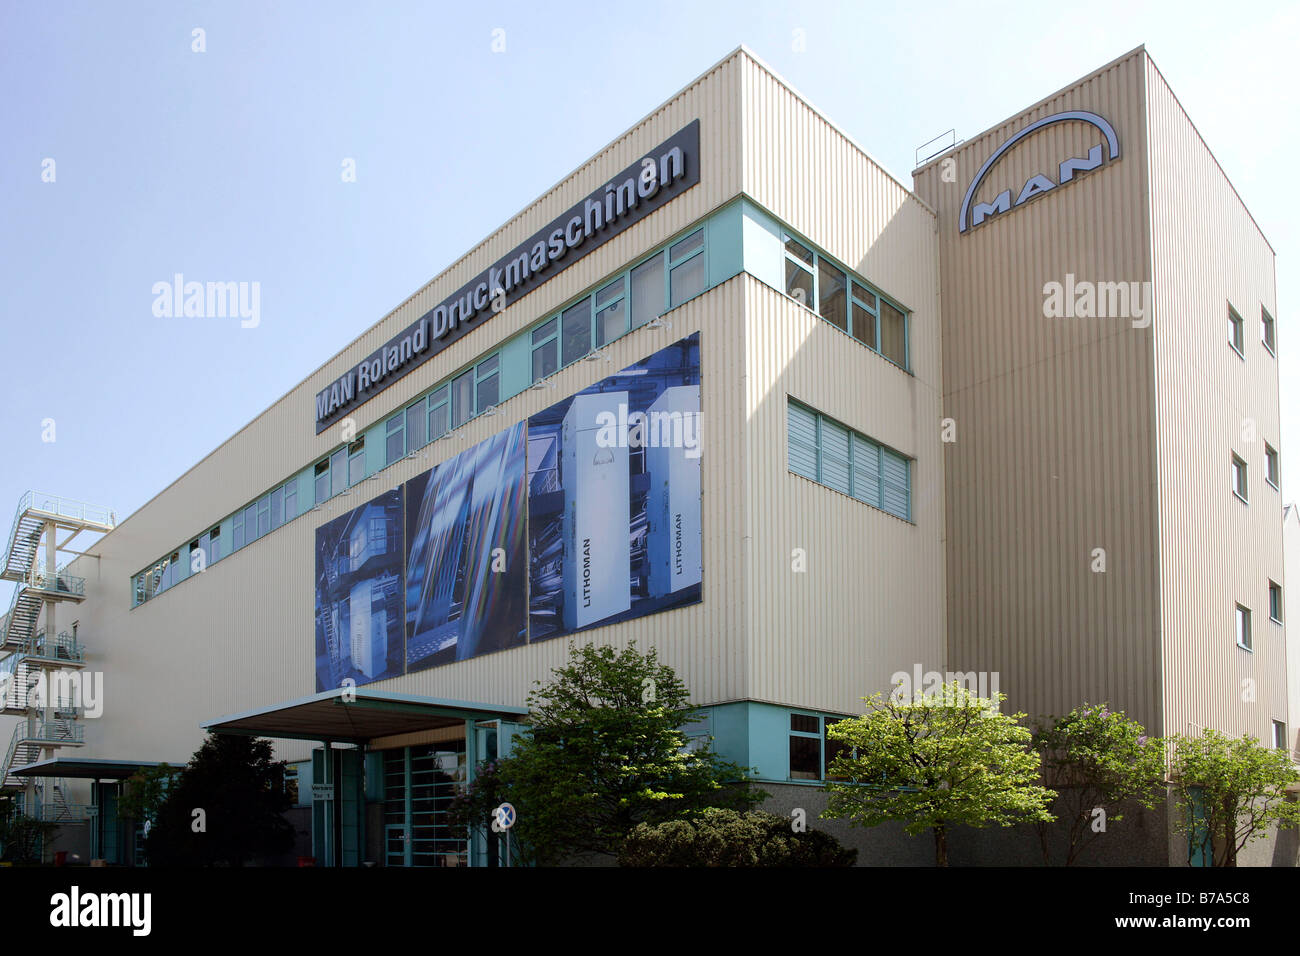 Hall de production, la fabrication, la production de machines à imprimer MAN Roland Corporation, Augsburg, Bavaria, Germany, Europe Banque D'Images